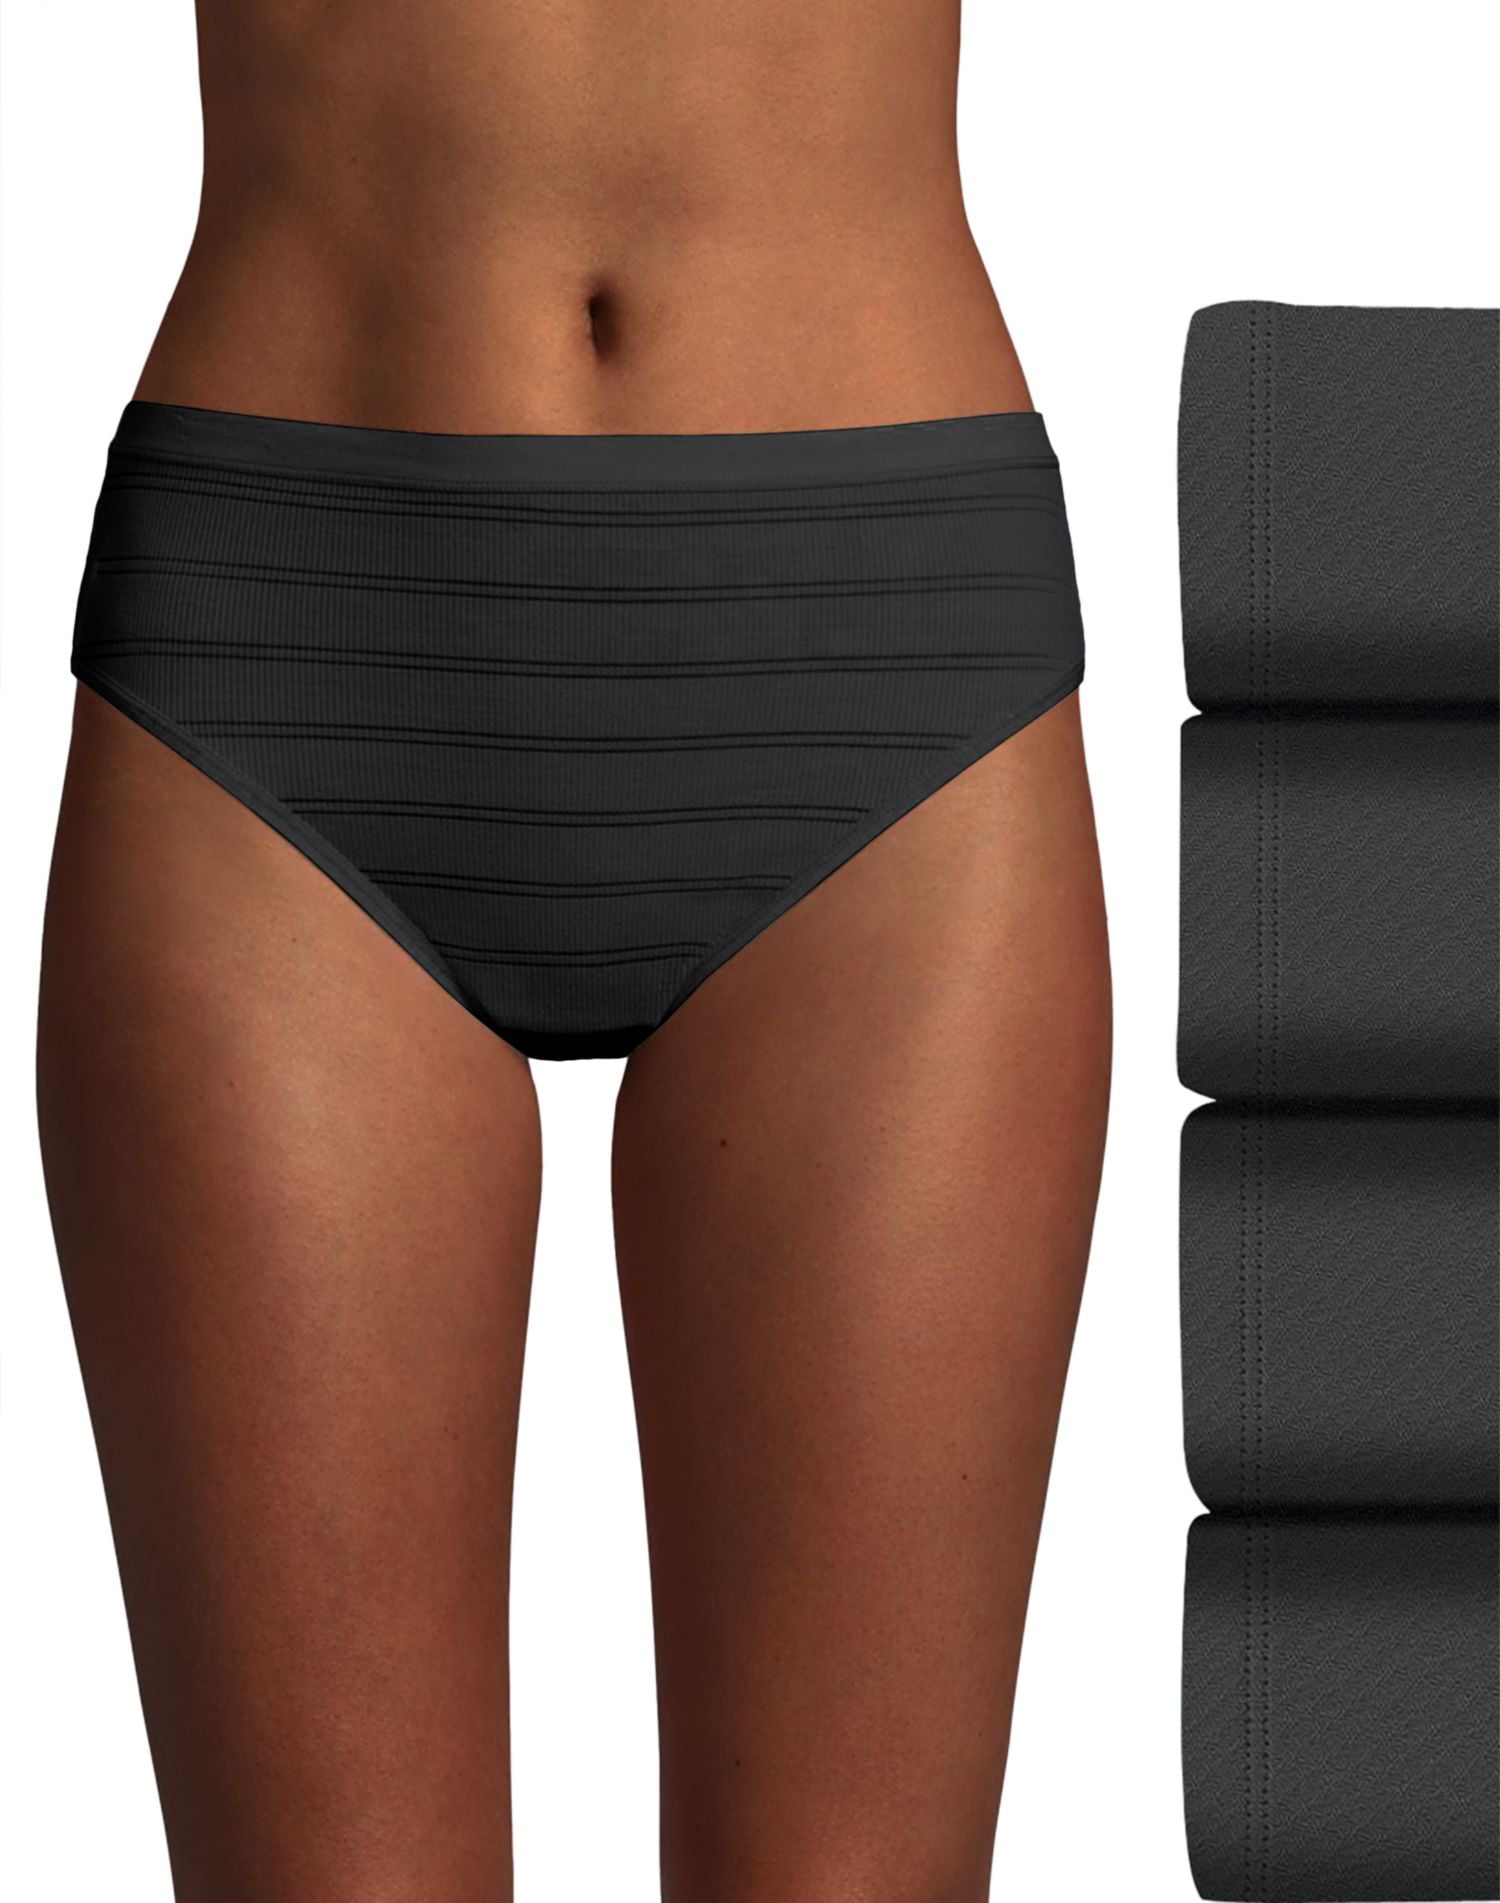 Home WOMEN Underwear Briefs Hanes Breathable Mesh Women's